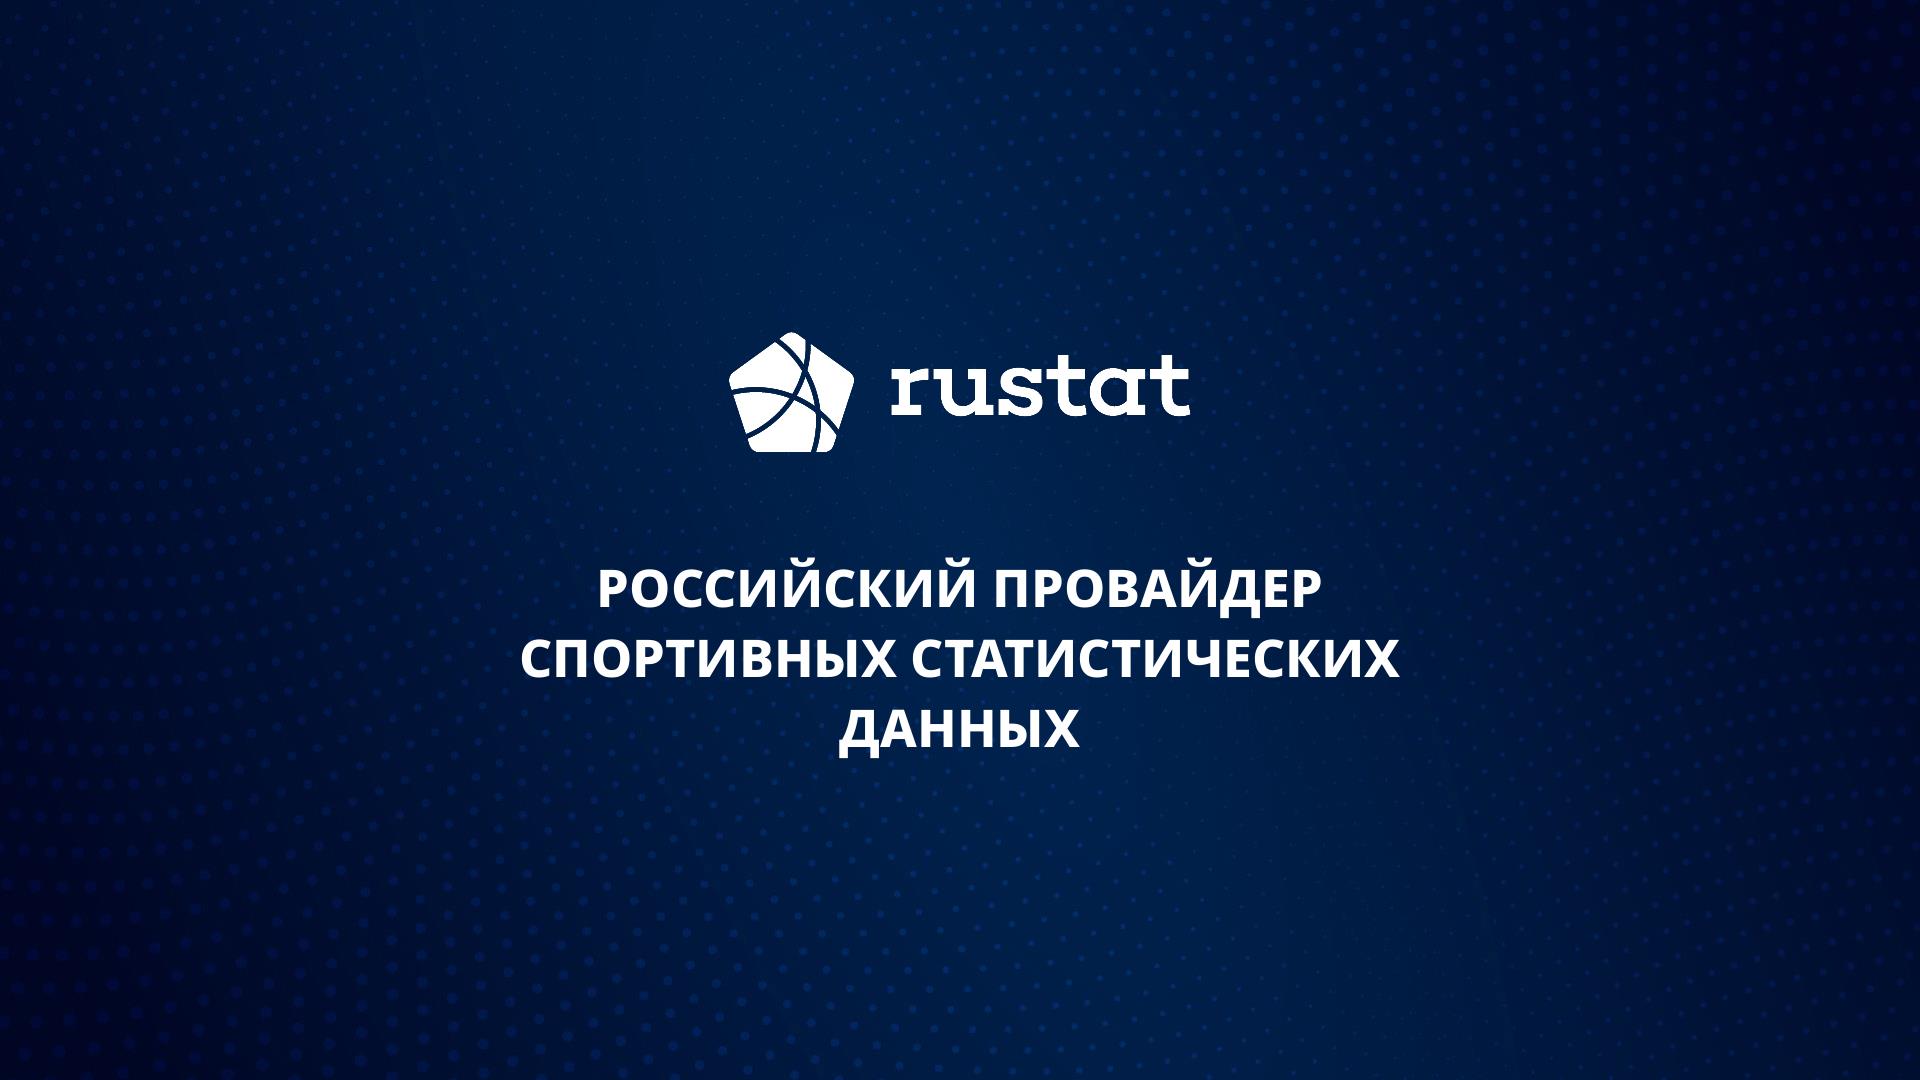 От глубинной аналитики до интеграций с «Матч ТВ»: как Rustat помогает нашему футболу